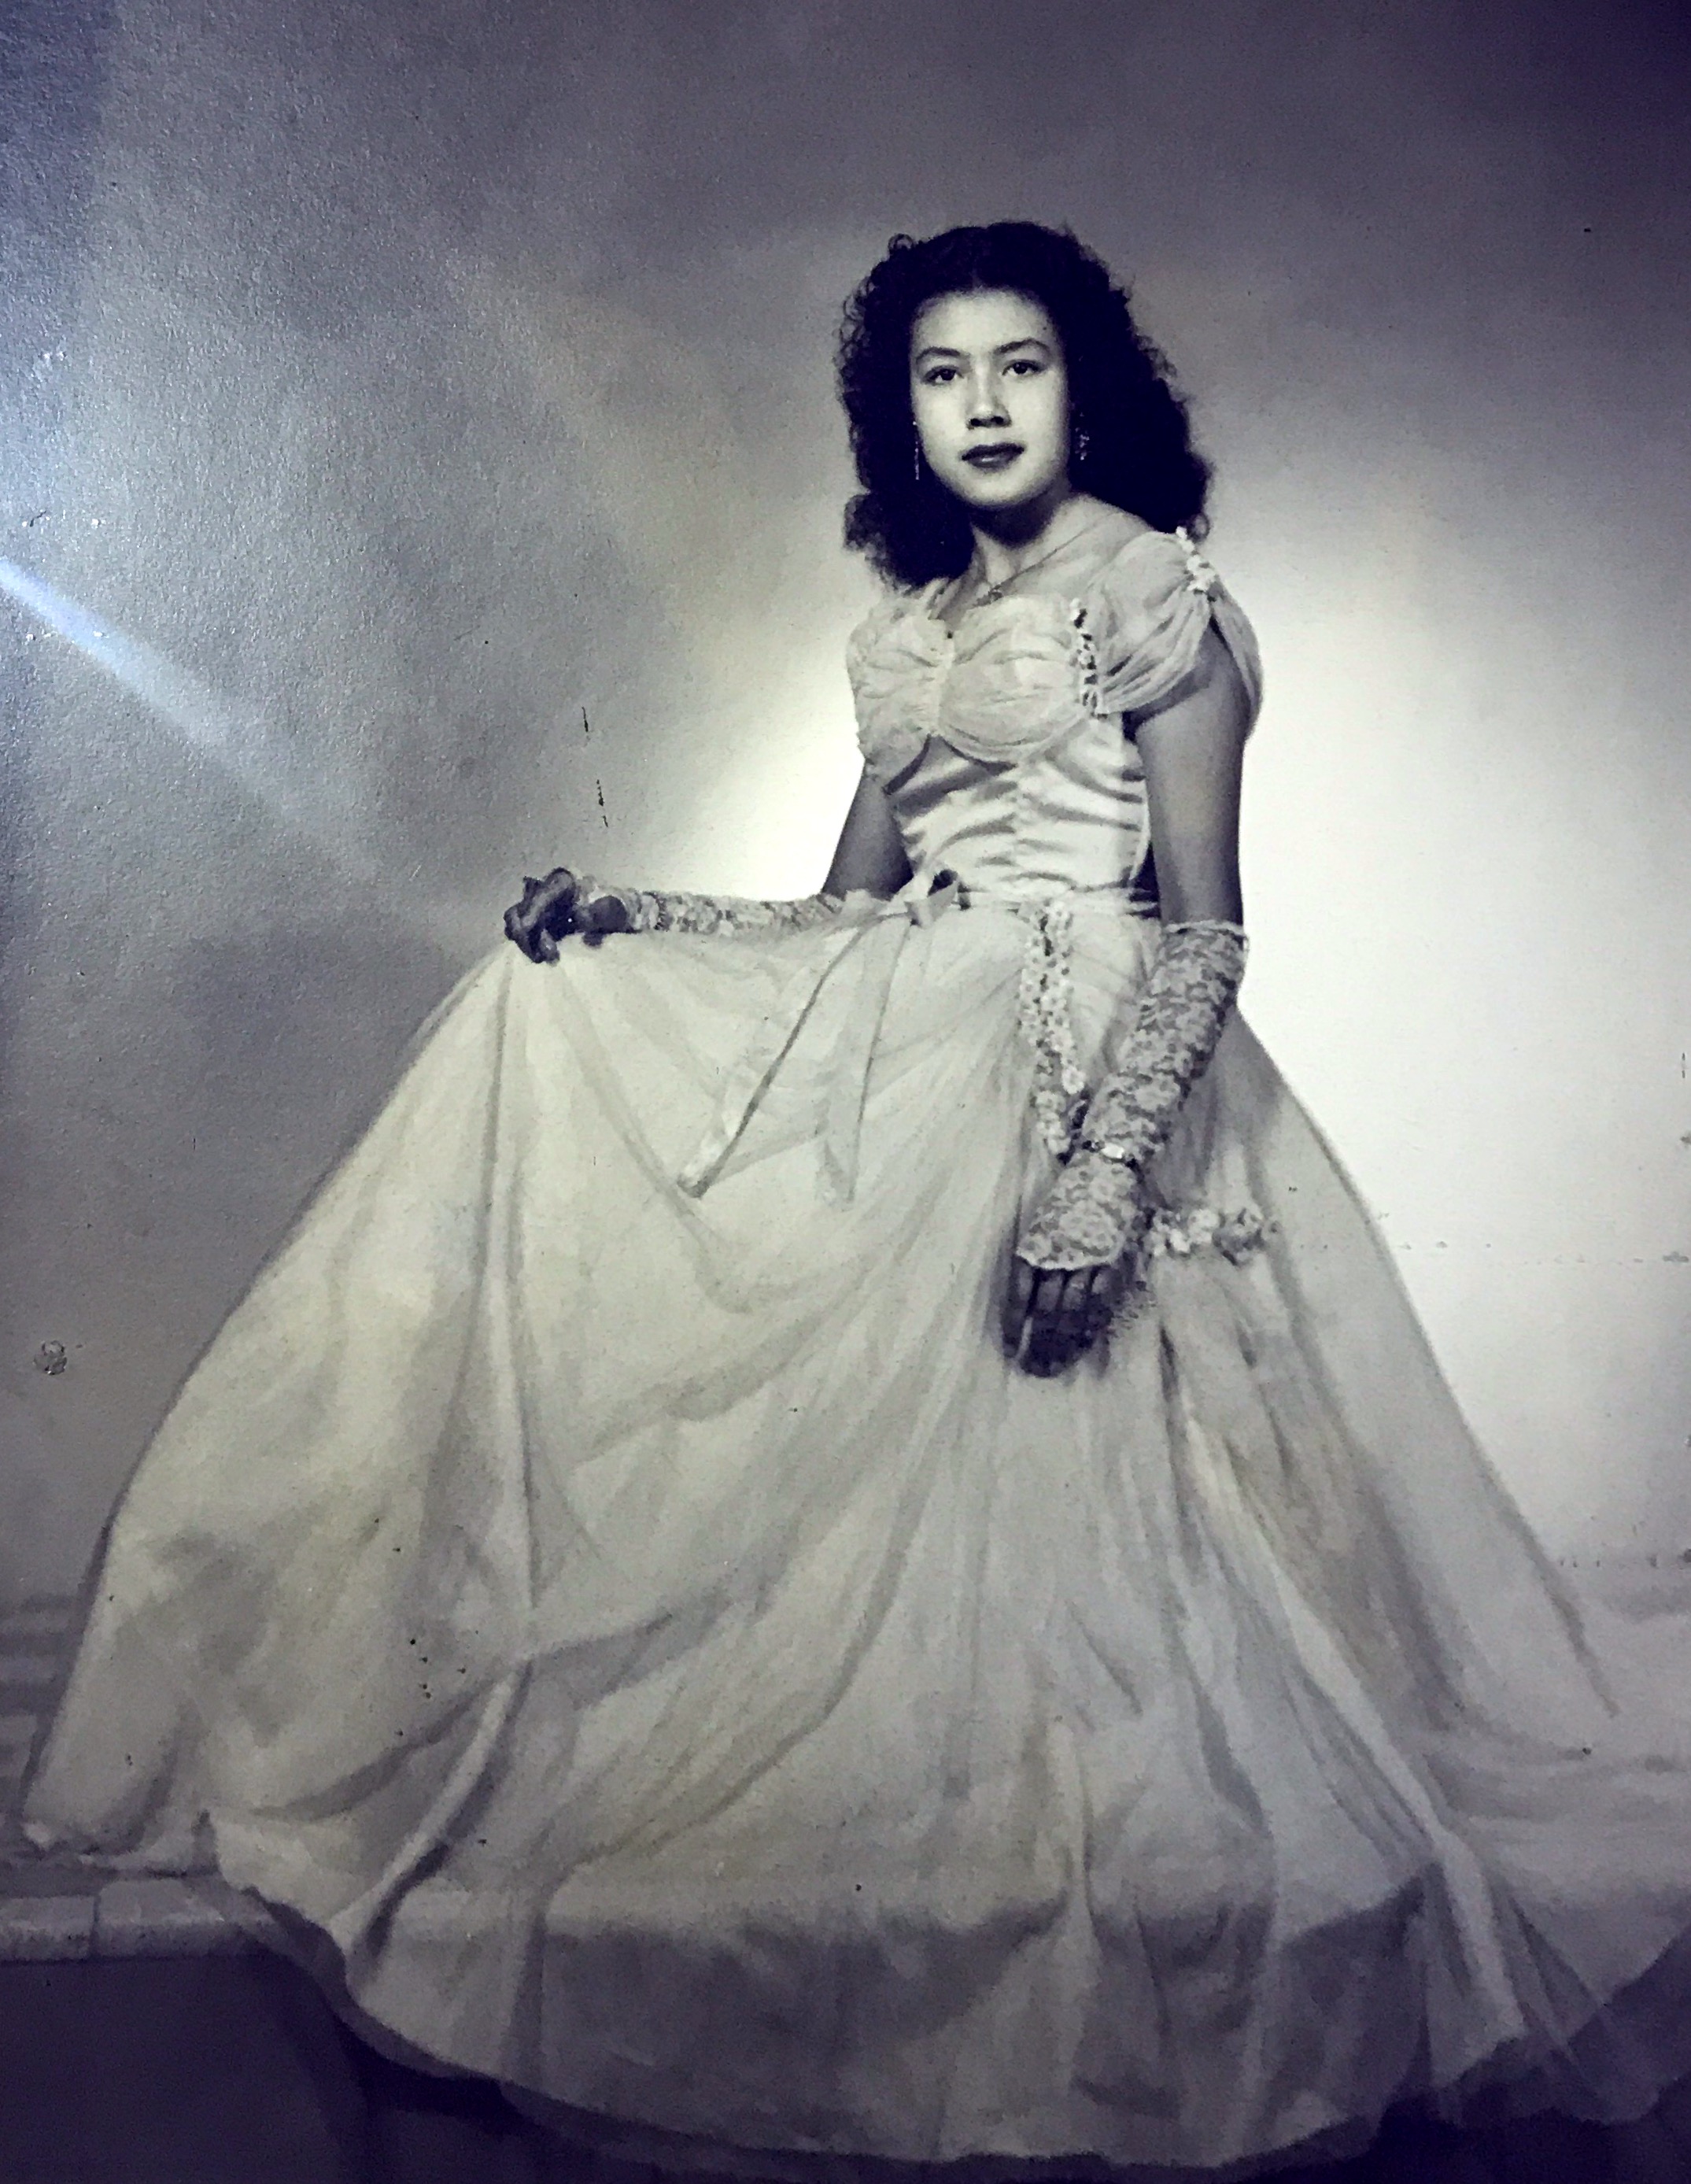 Elvia Zamora. XV años. Mexico 1955

My aunt Elvia, in her sweet
Sixteenths dress.